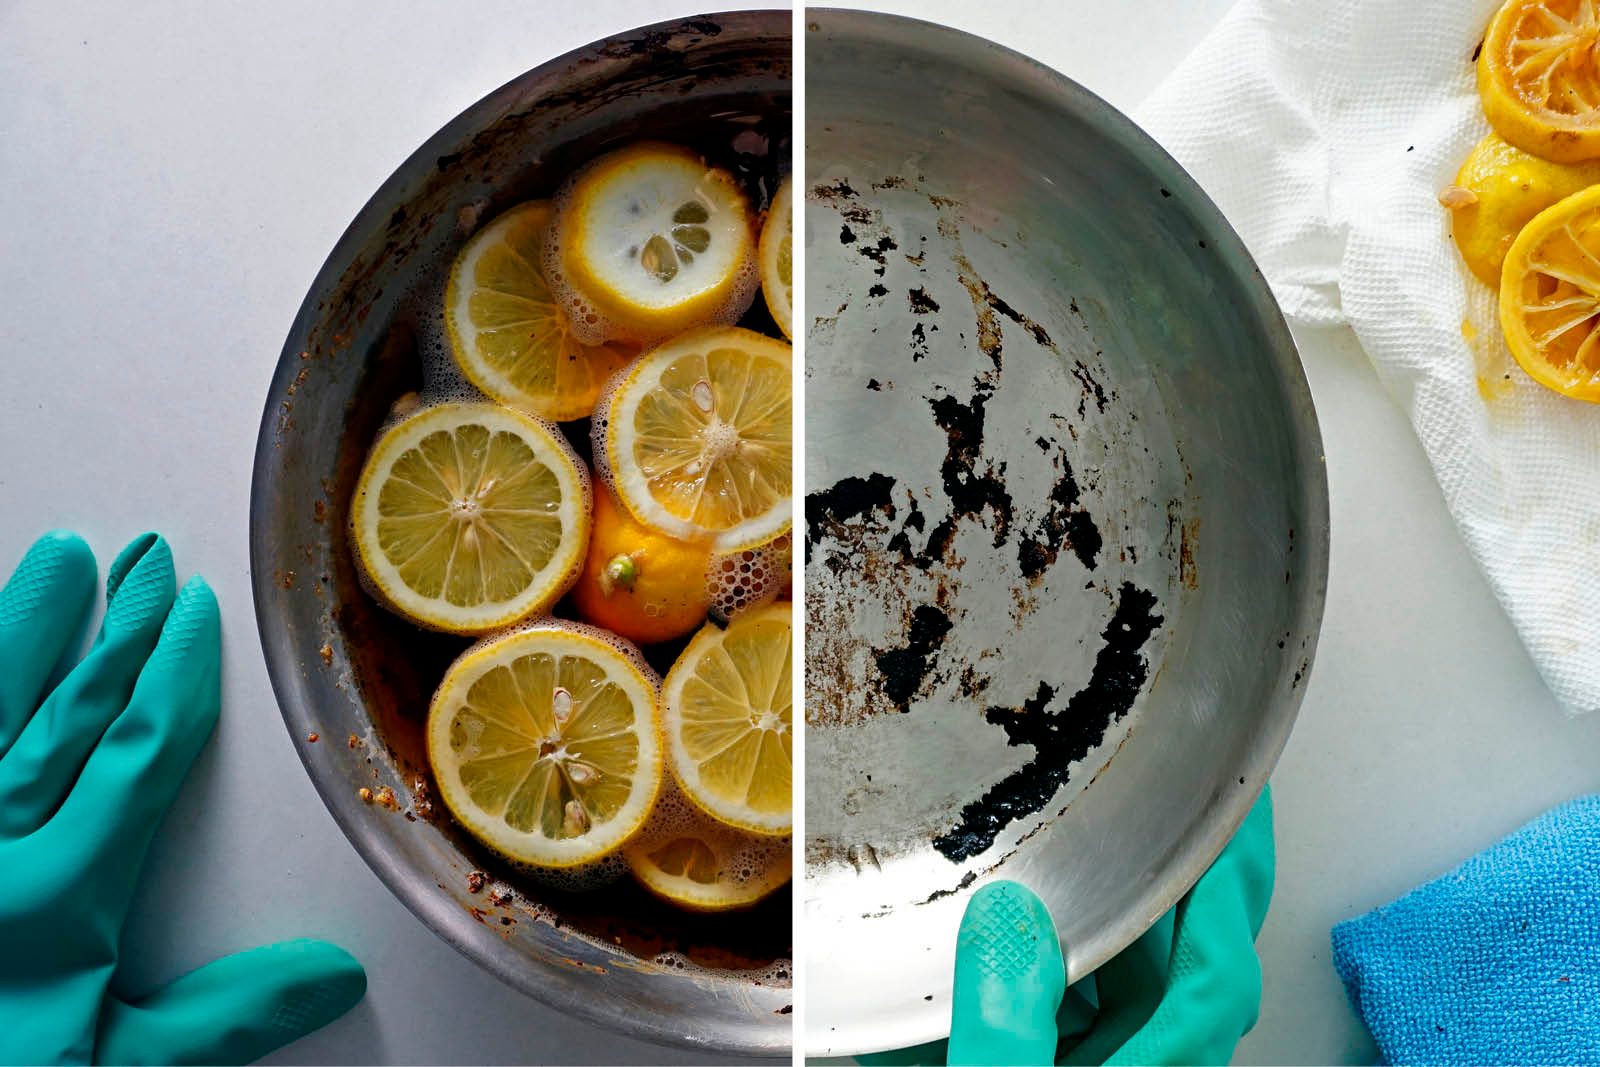 Lemon cleaning pan